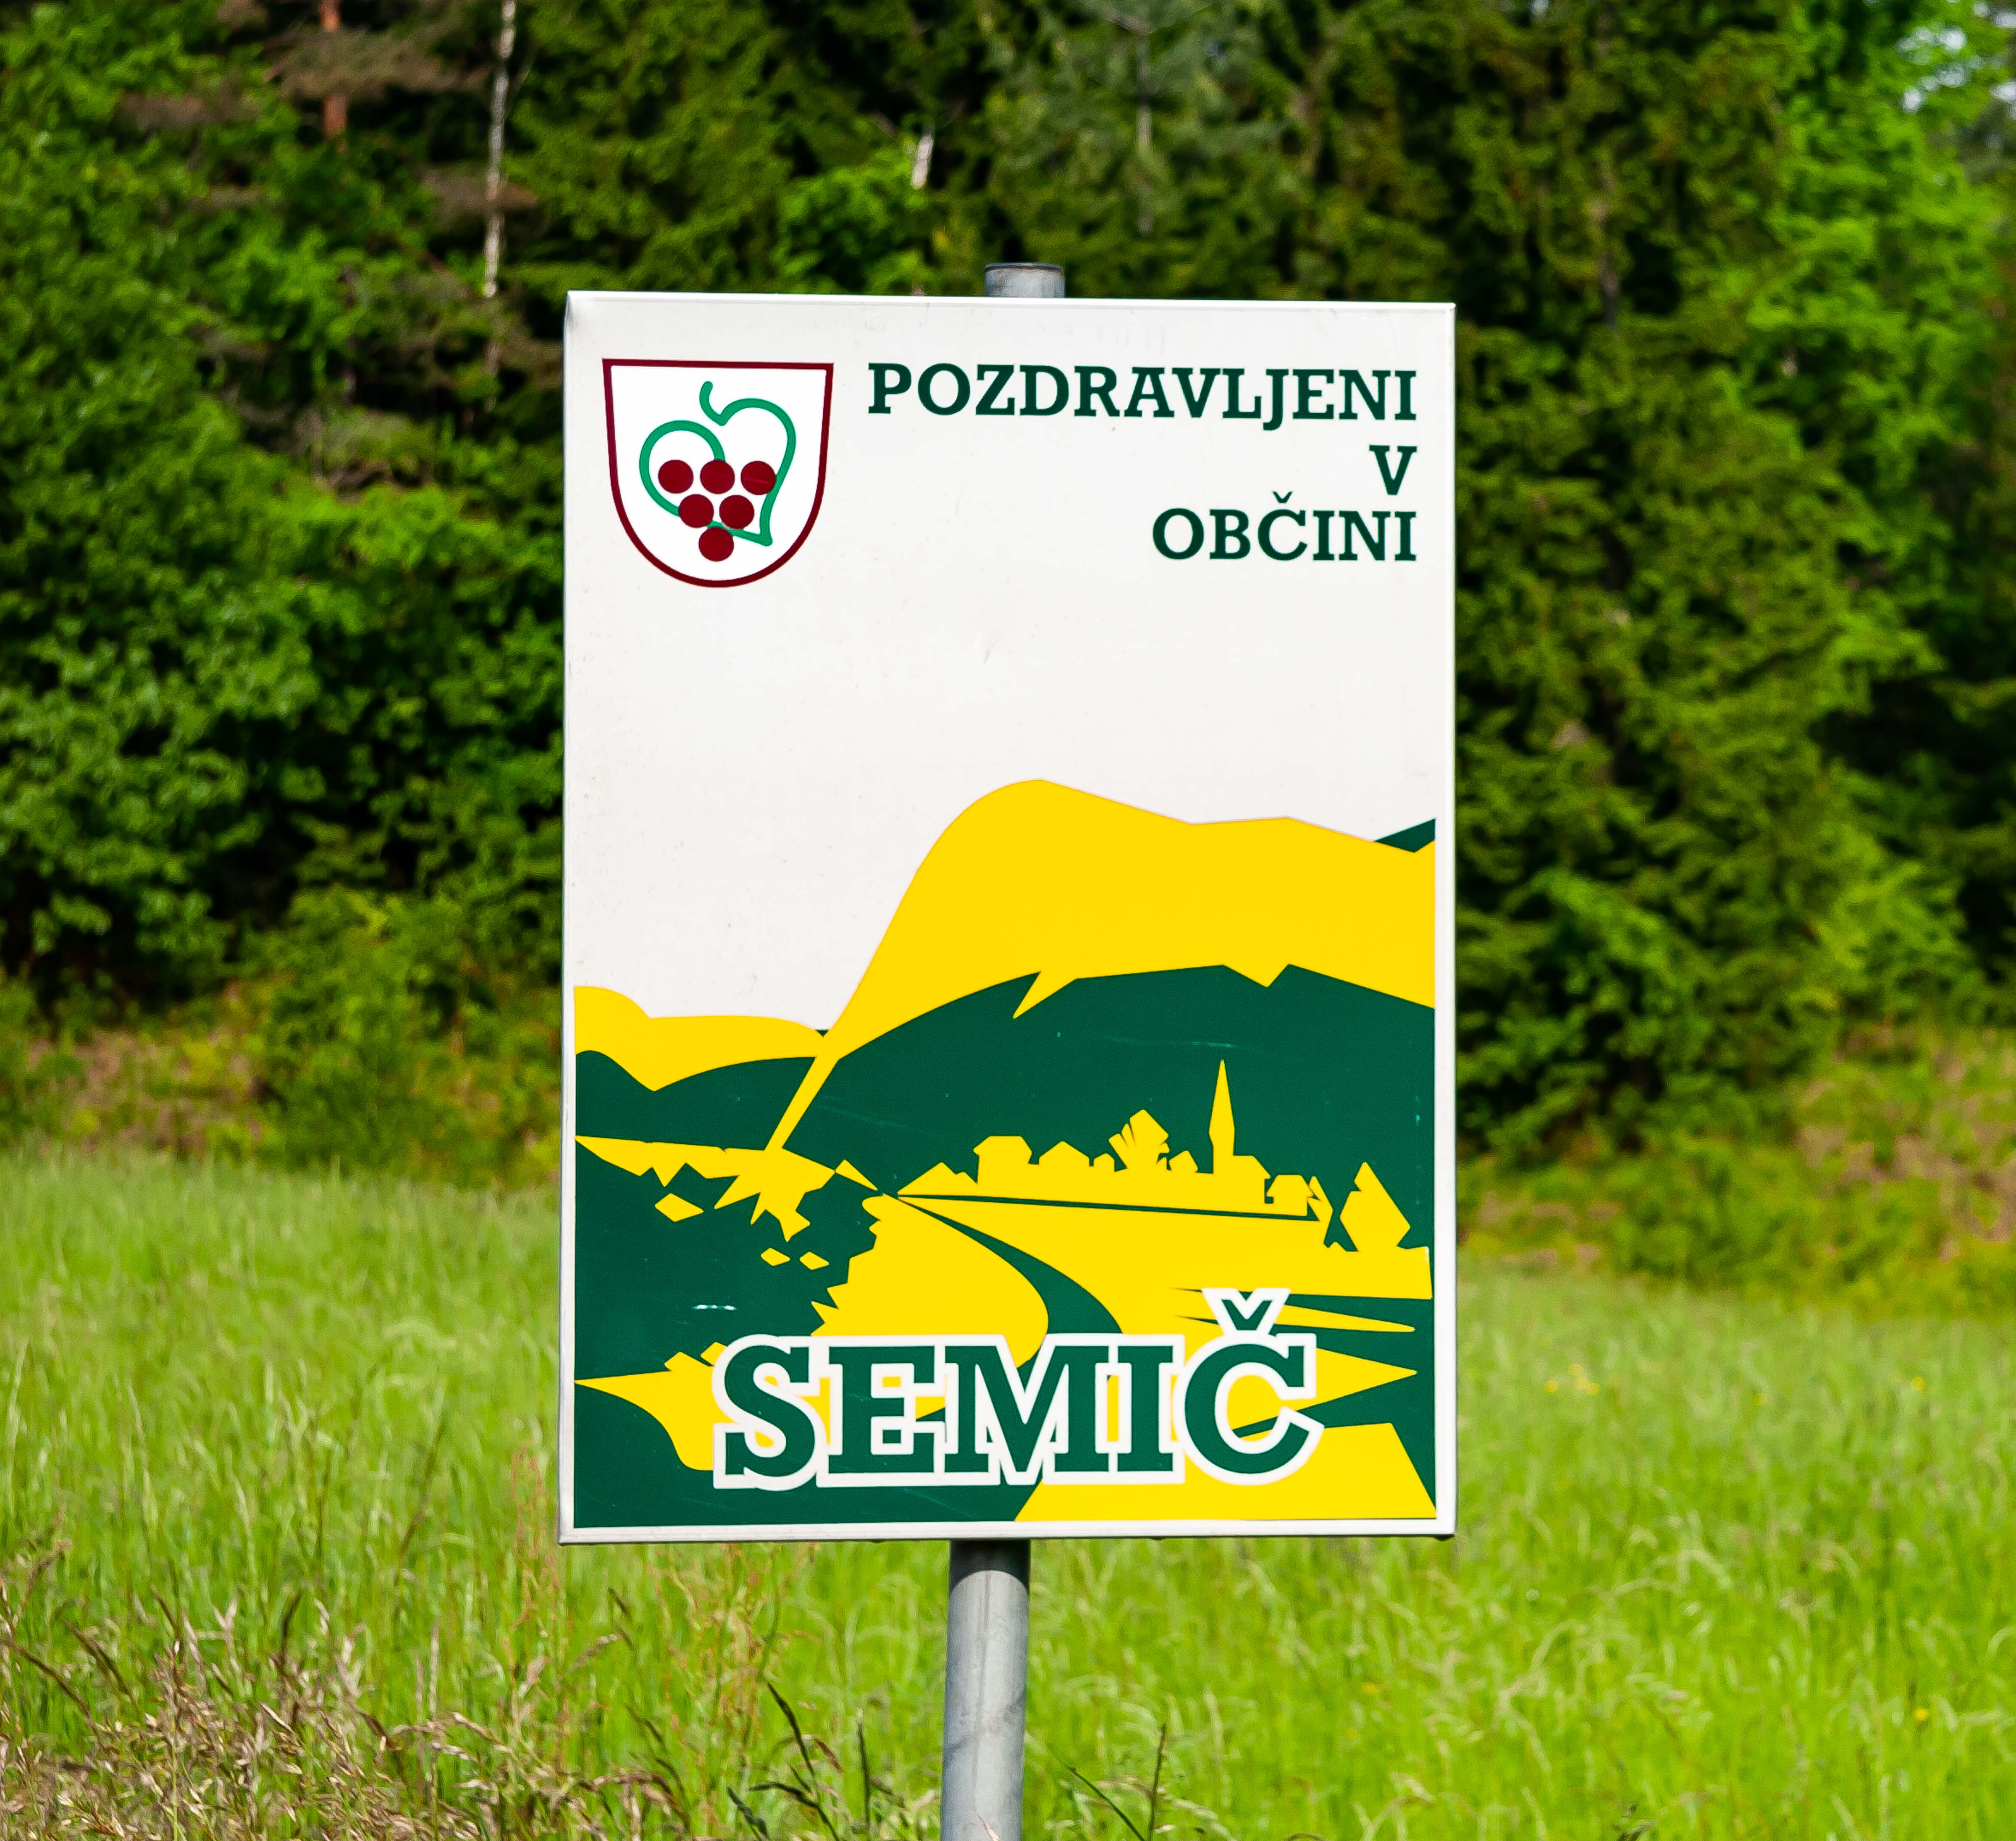 Slovenia, Semic Prov, Semic Obcina Sign, 2006, IMG 7434